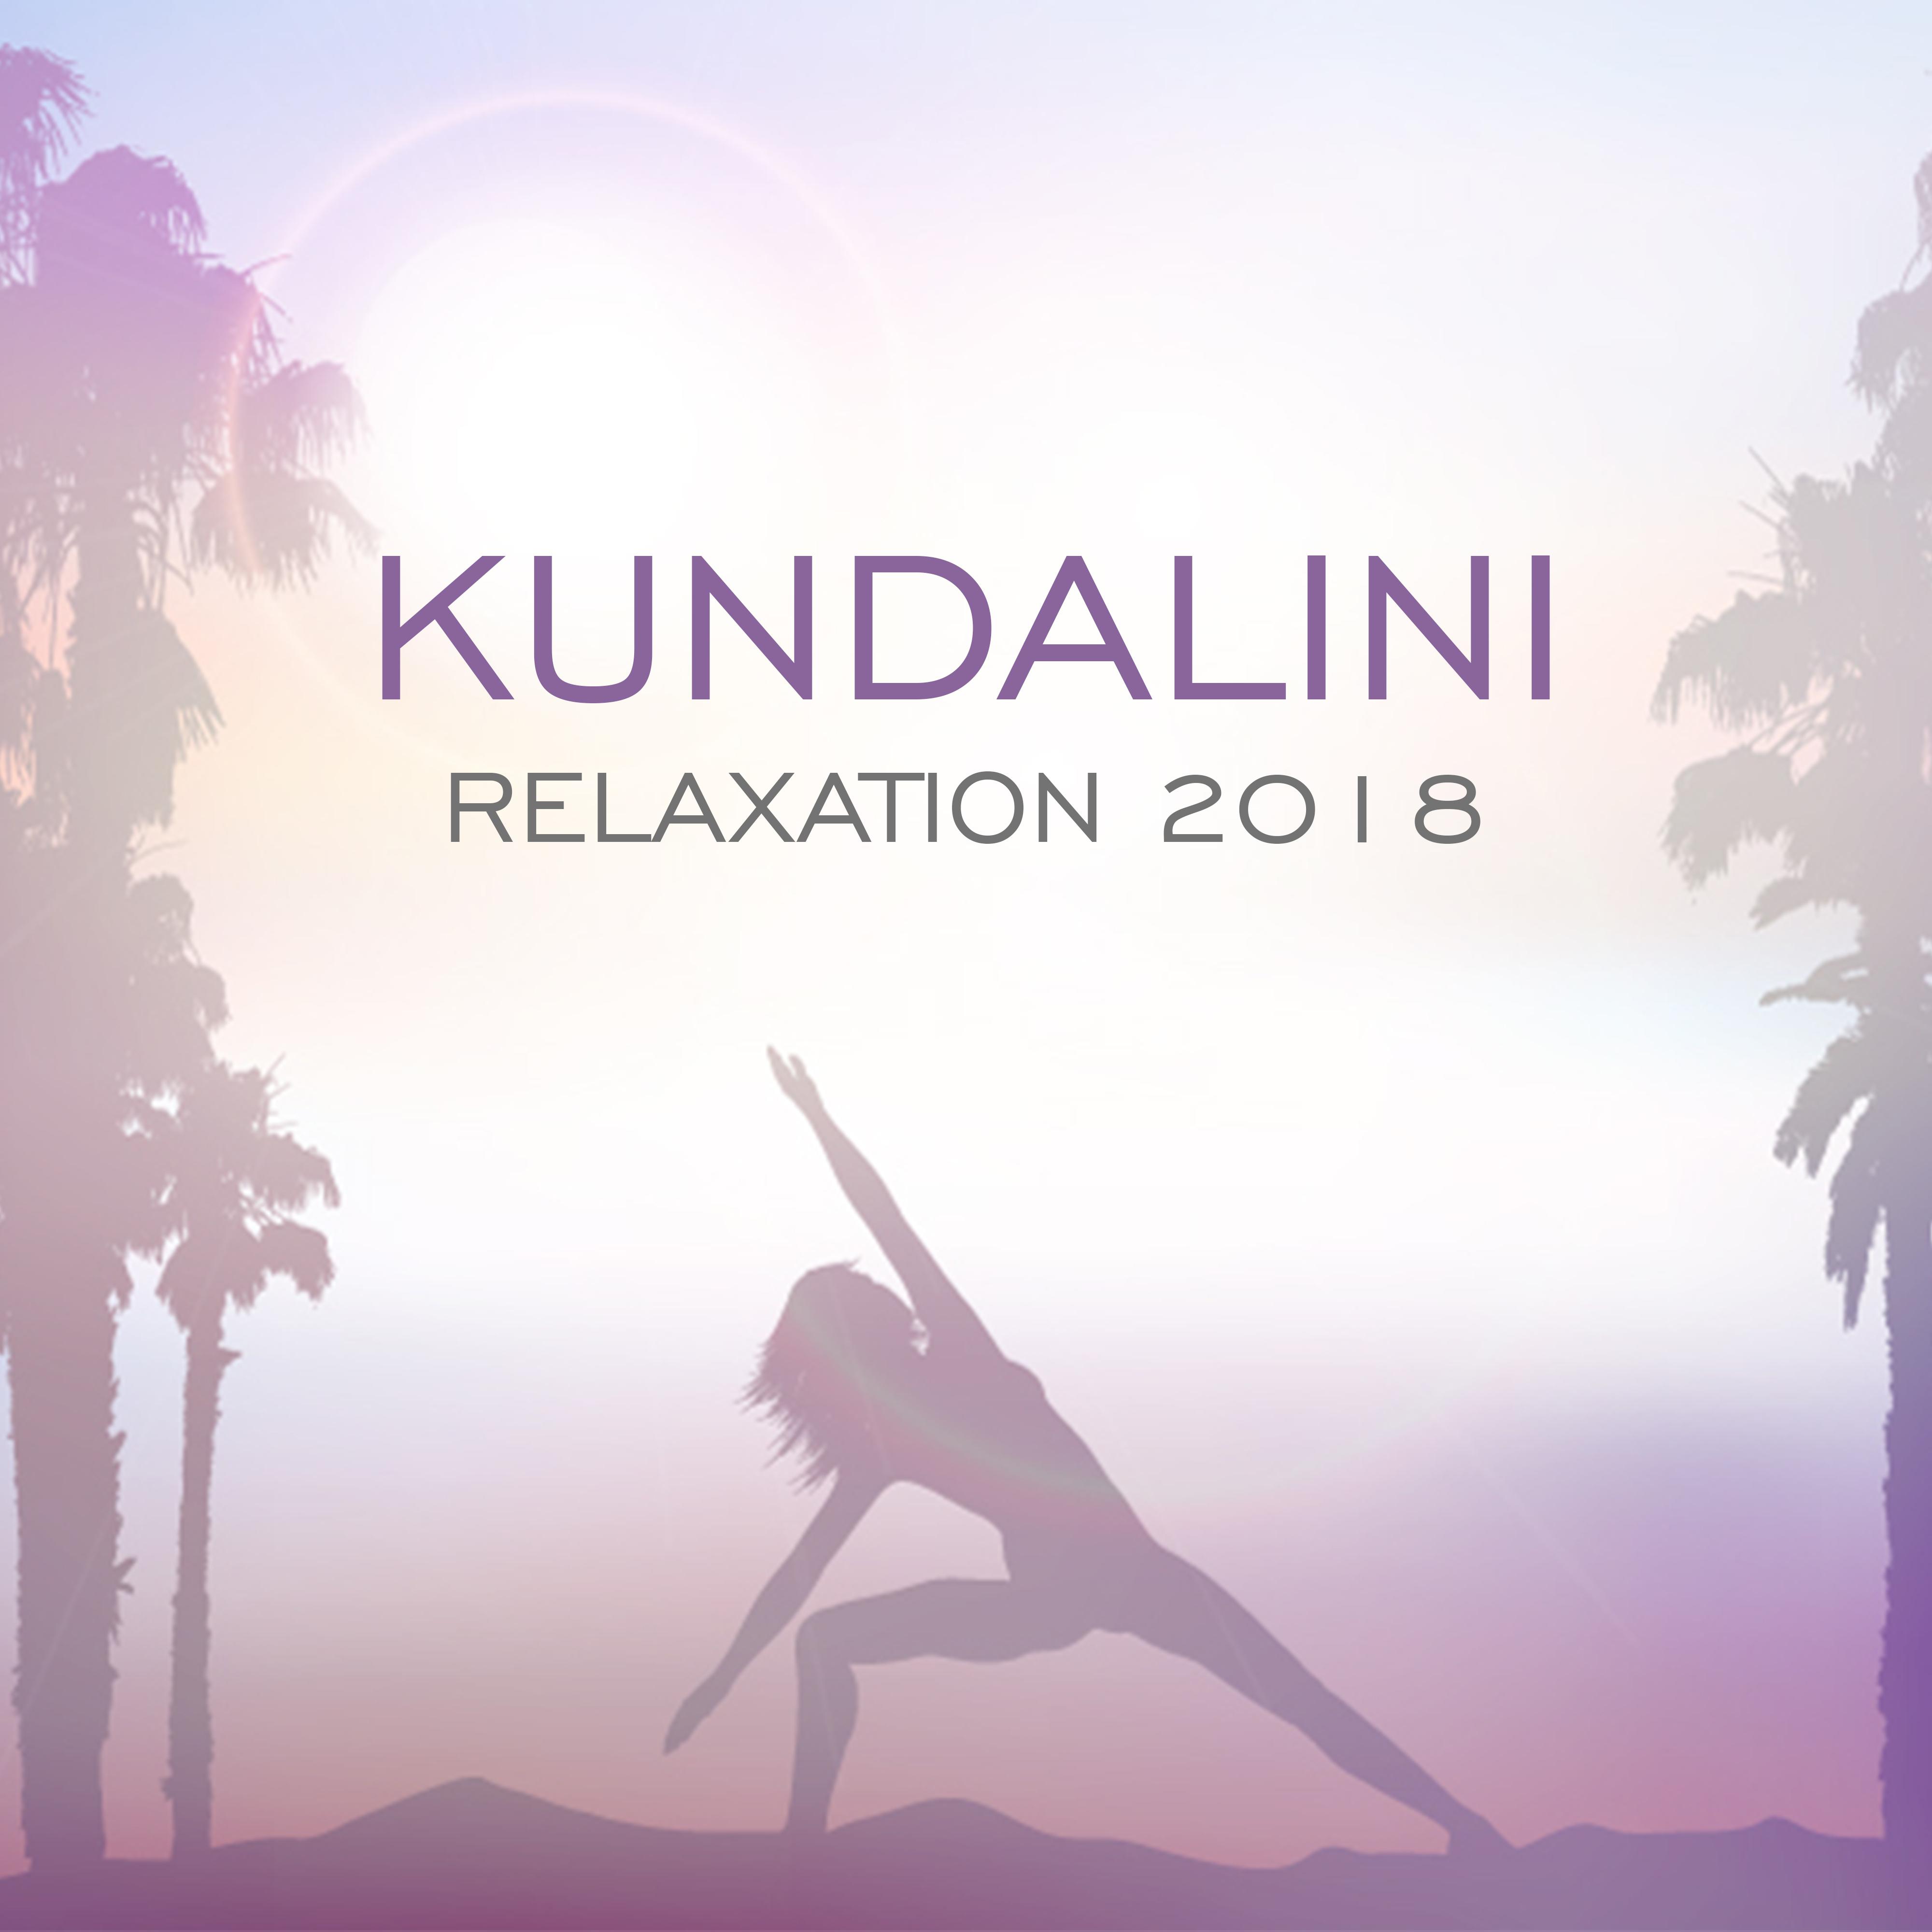 Kundalini Relaxation 2018